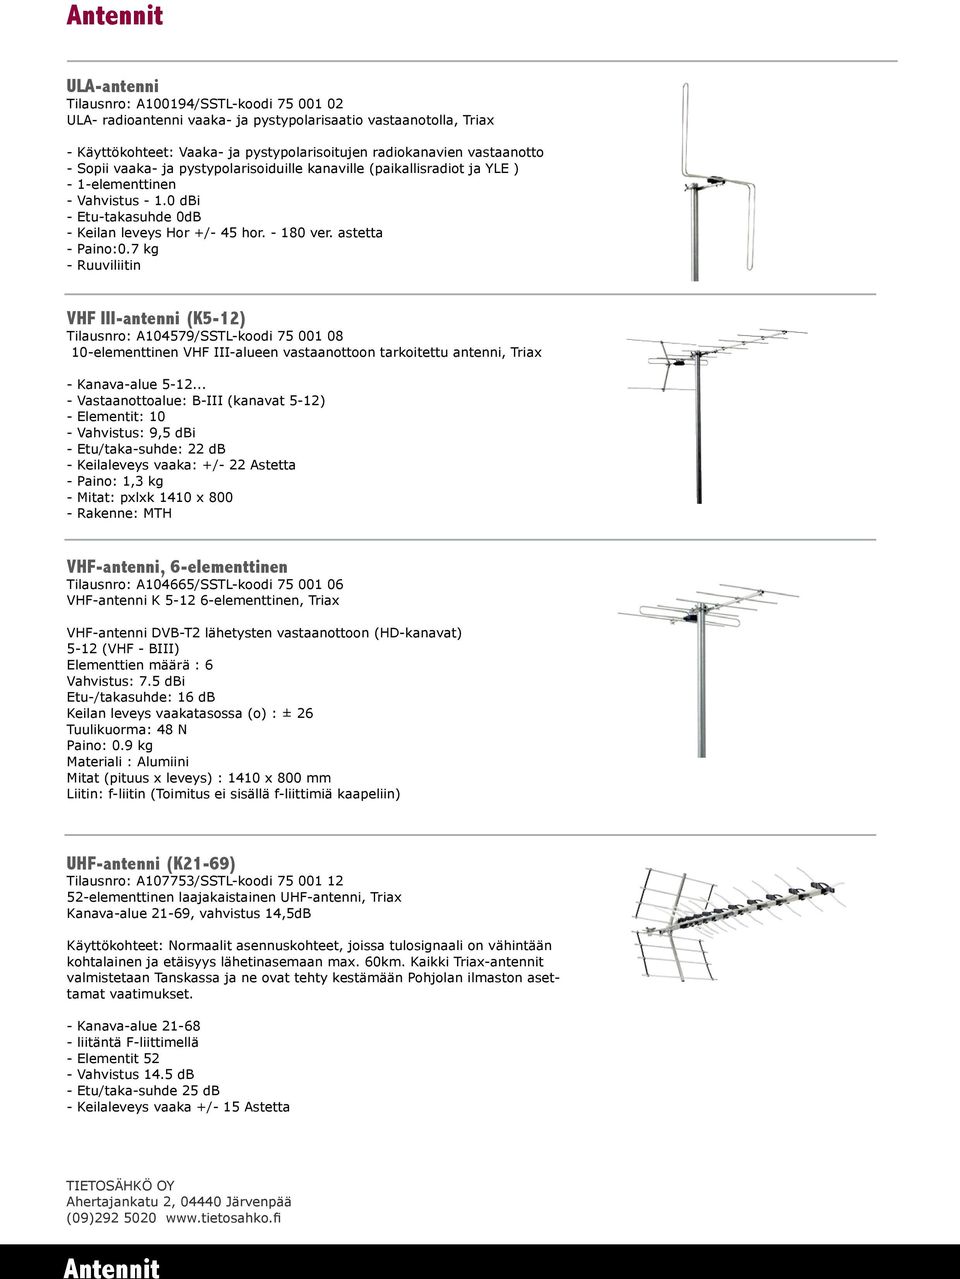 astetta - Paino:0.7 kg - Ruuviliitin VHF III-antenni (K5-12) Tilausnro: A104579/SSTL-koodi 75 001 08 10-elementtinen VHF III-alueen vastaanottoon tarkoitettu antenni, Triax - Kanava-alue 5-12.